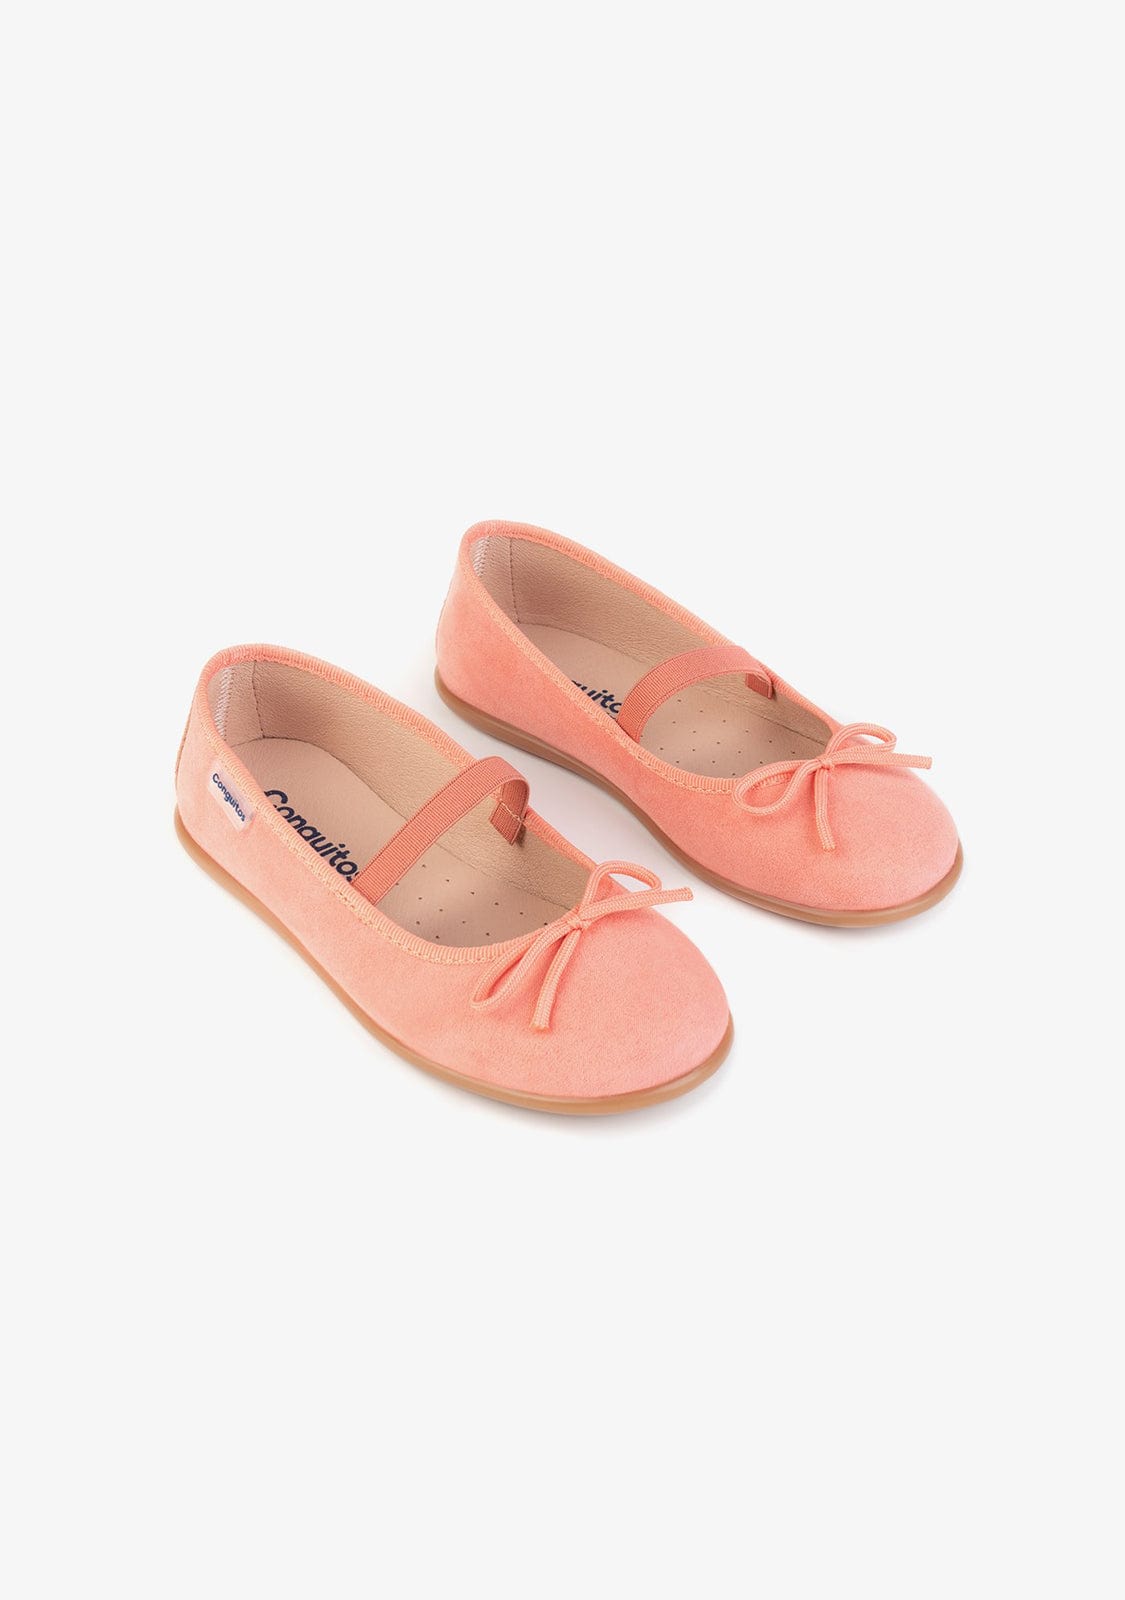 CONGUITOS Shoes Girl’s Coral Basic Ballerinas